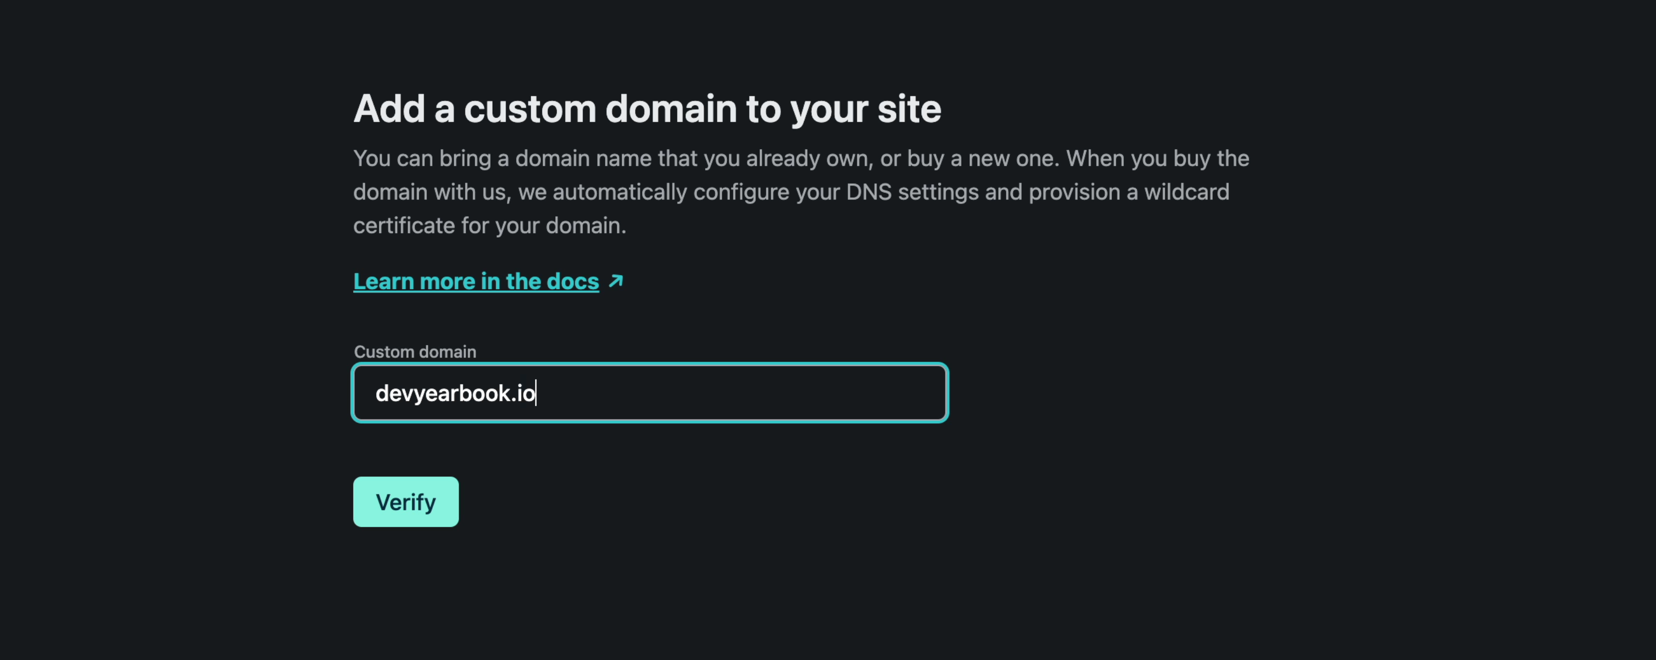 Verify domain name in Netlify